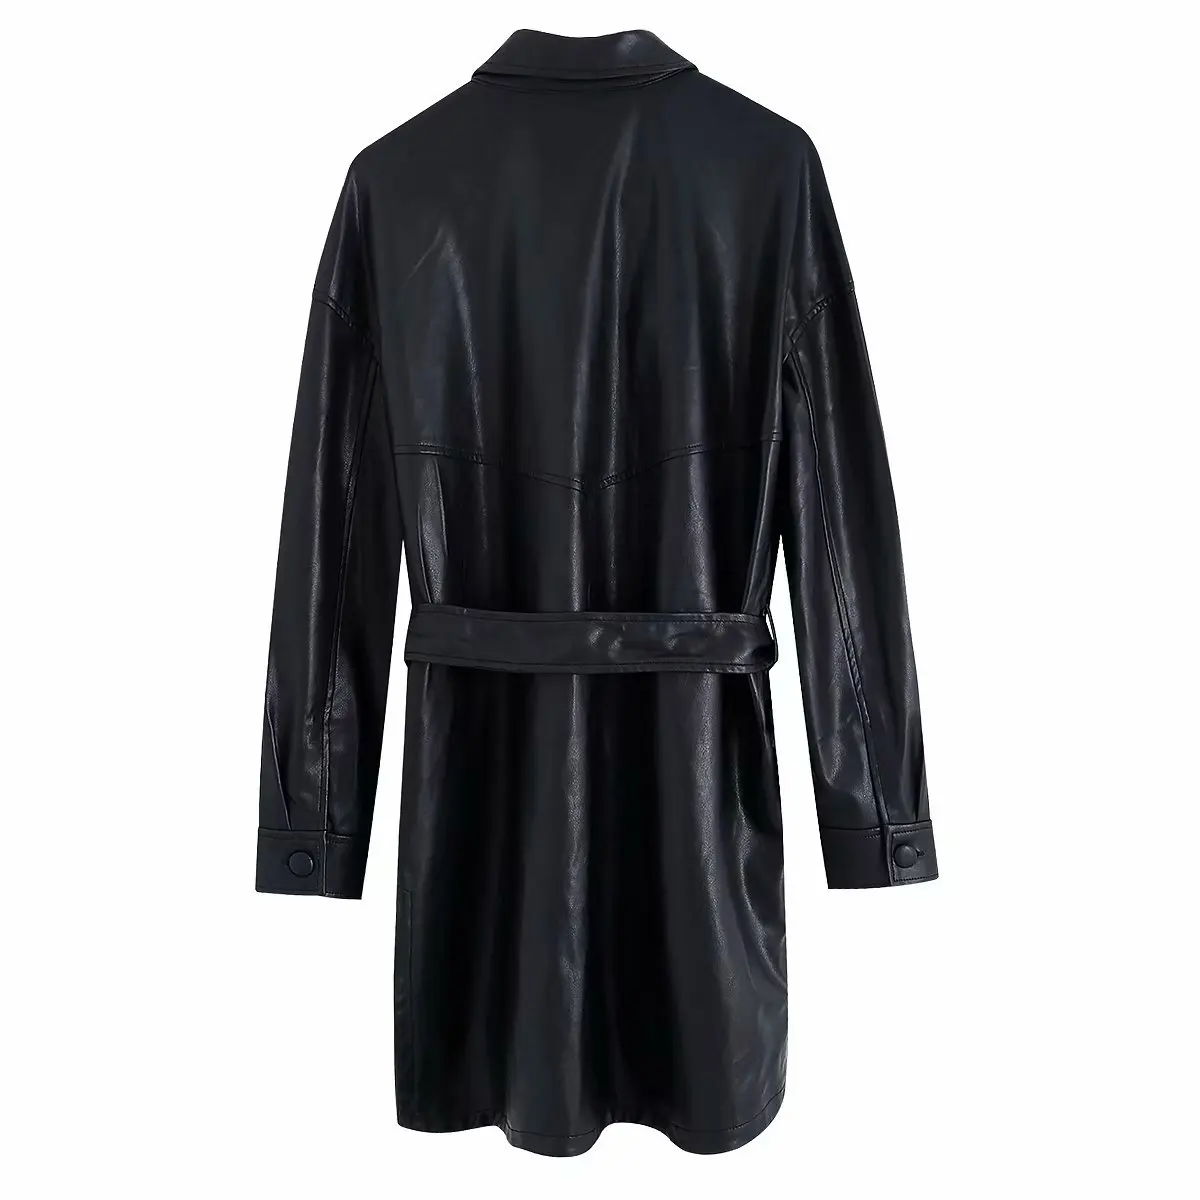 Зимняя куртка из искусственной кожи с поясом, Женская байкерская куртка из искусственной кожи, уличная куртка в стиле панк, мотоциклетная куртка с поясом, женская черная кожаная куртка, пальто